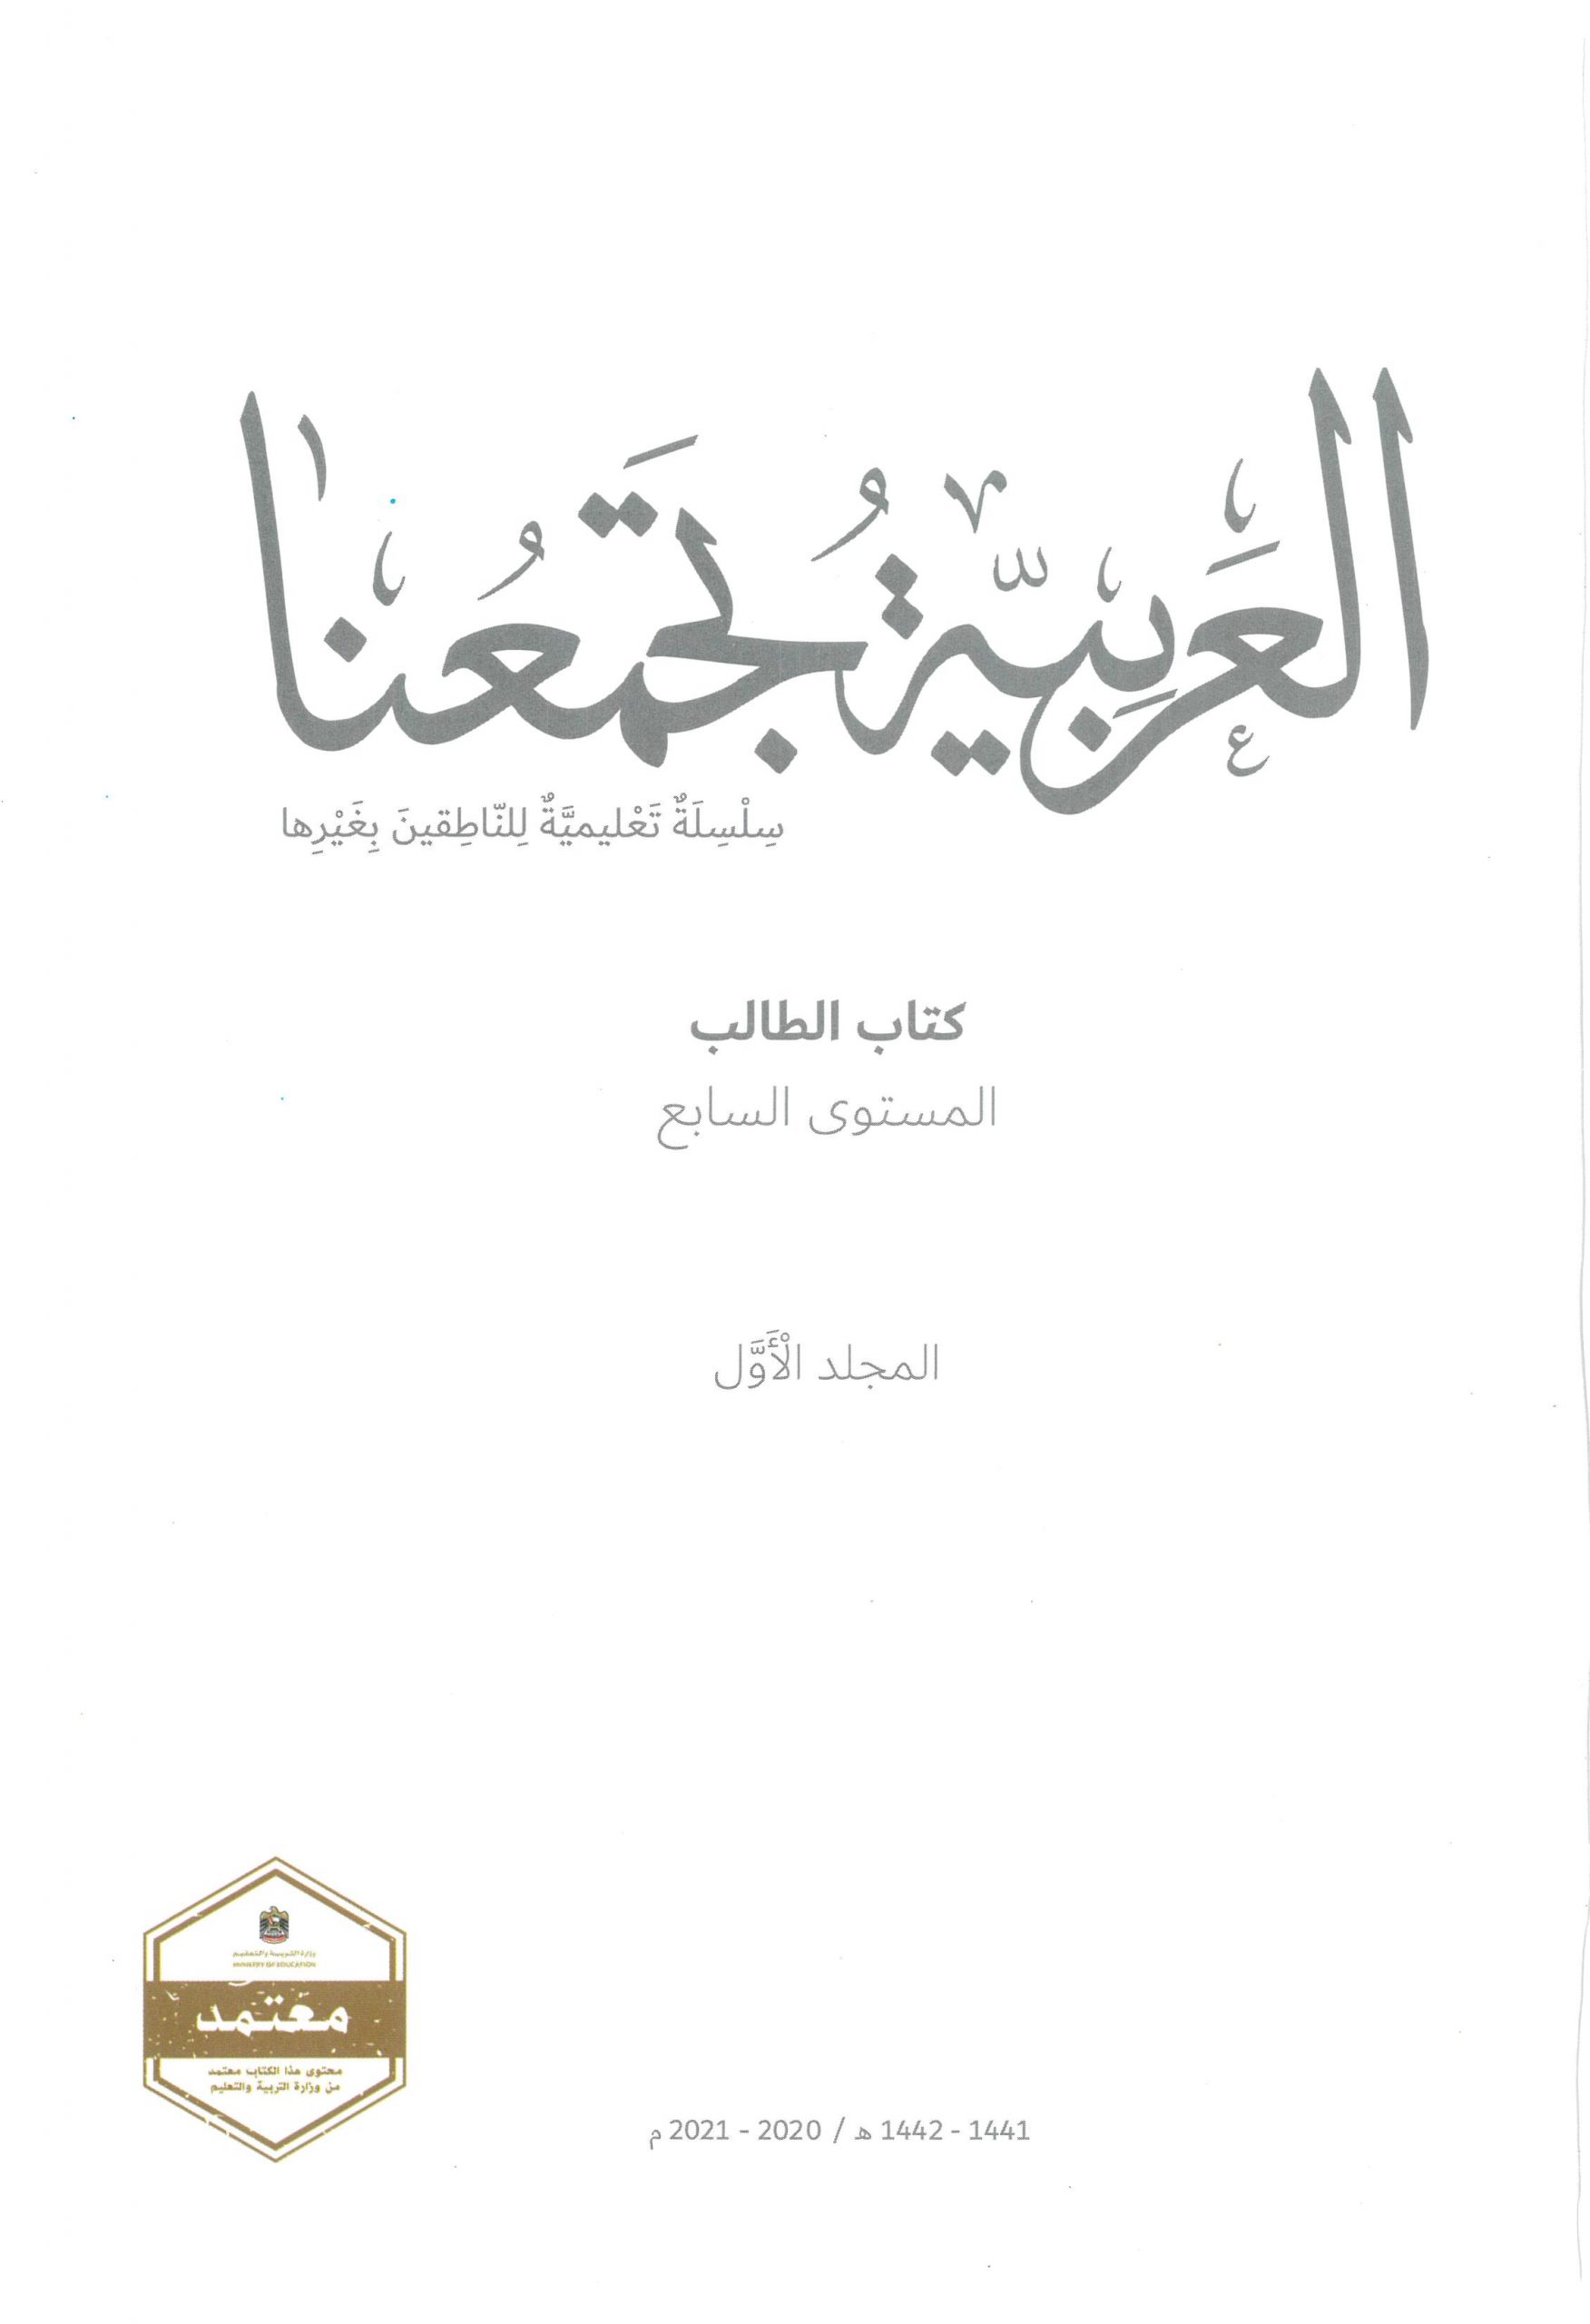 كتاب الطالب 2020 -2021 لغير الناطقين بها للصف السابع مادة اللغة العربية 